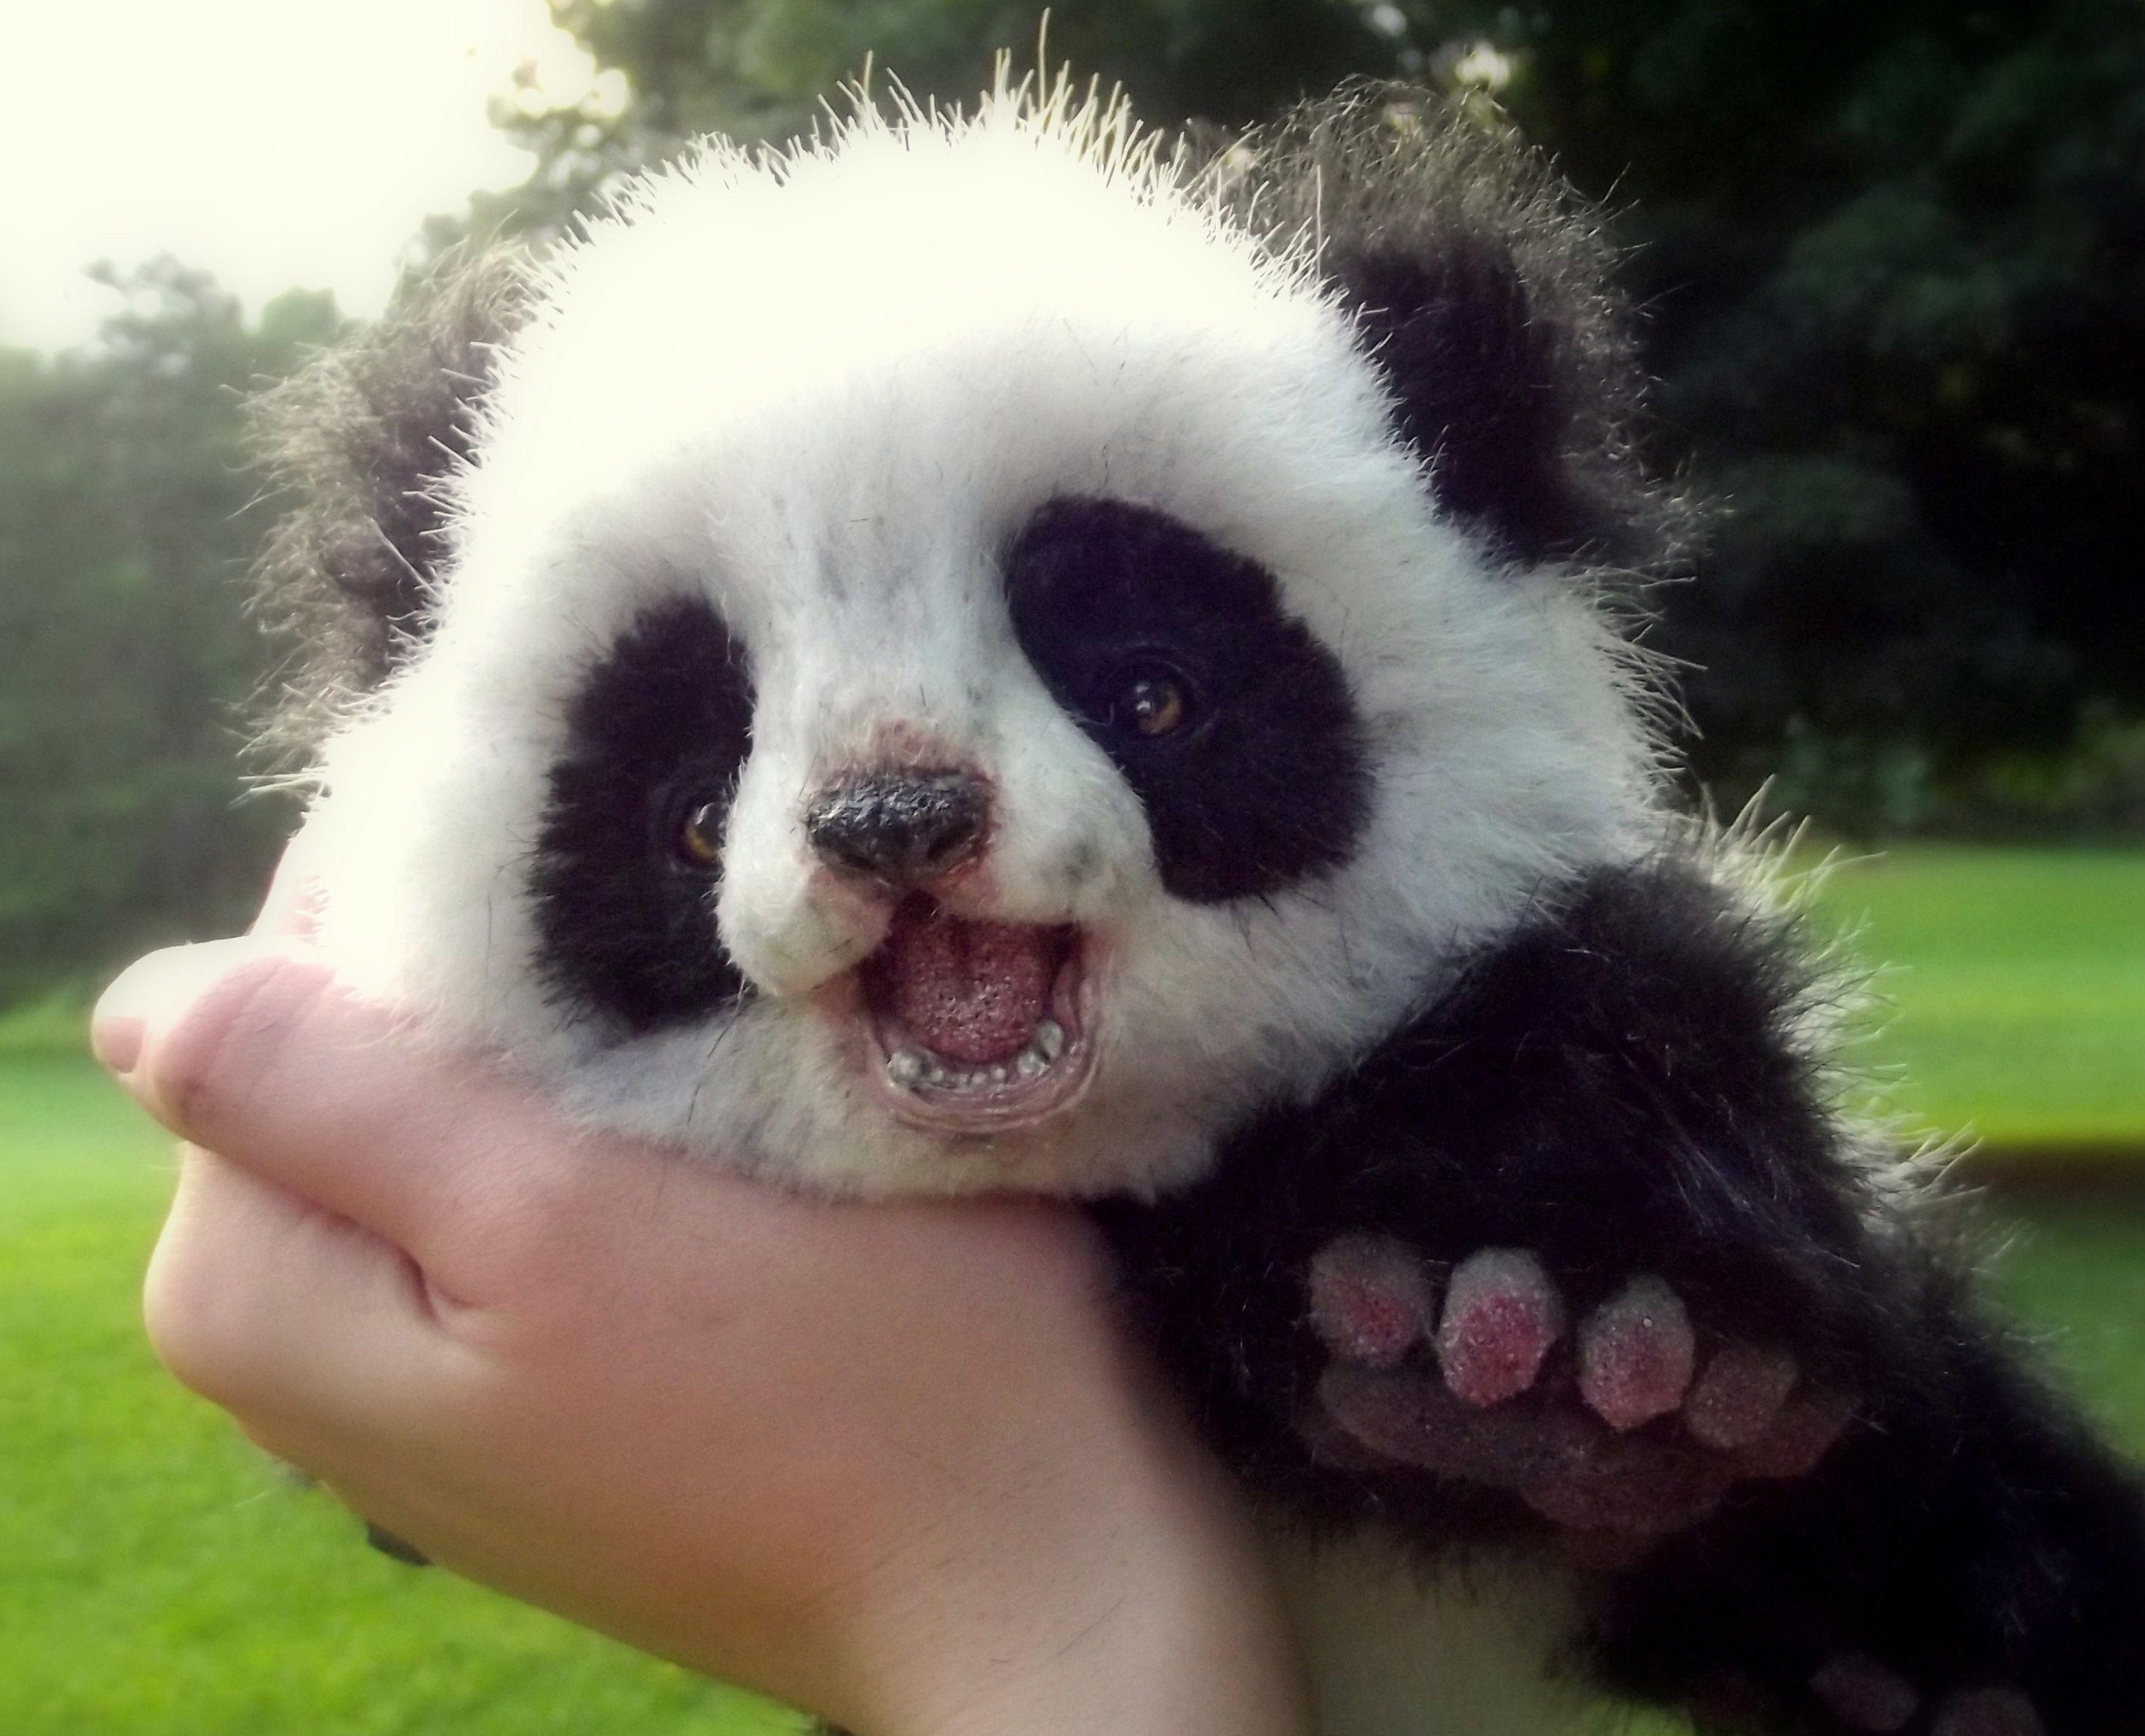 Cute Panda Picture